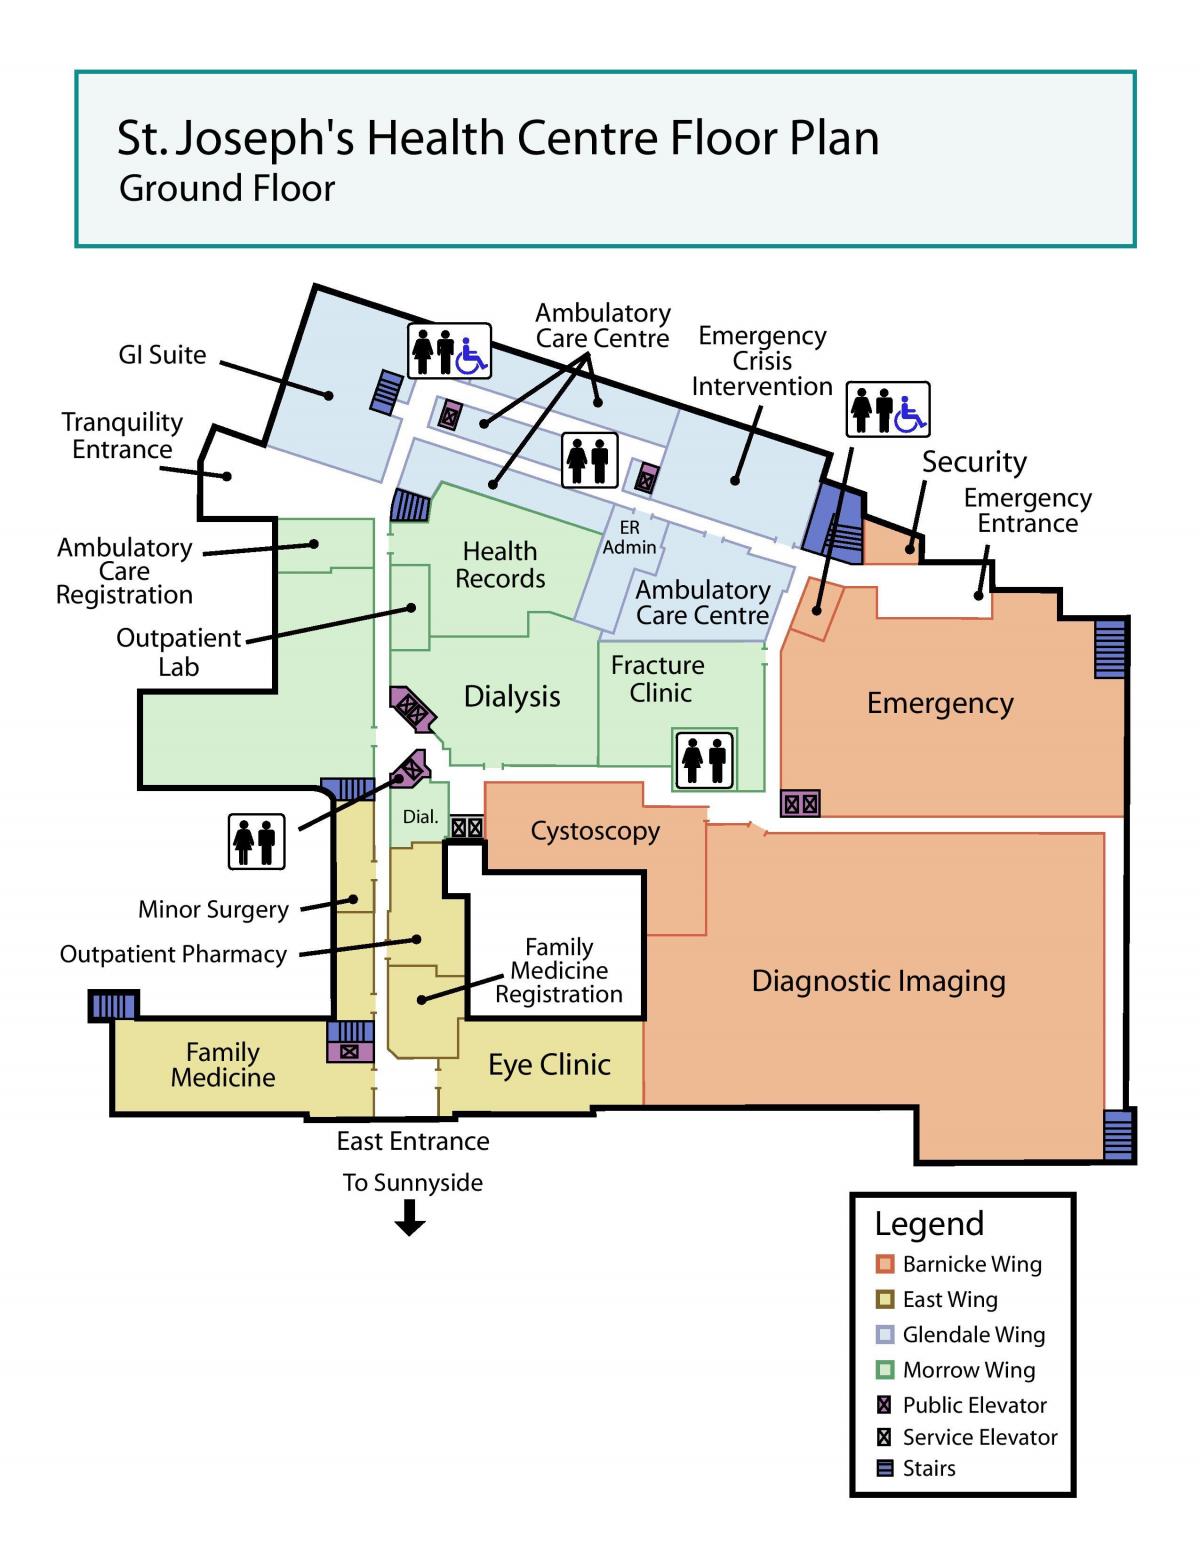 خريطة سانت جوزيف المركز الصحي في الطابق الأرضي